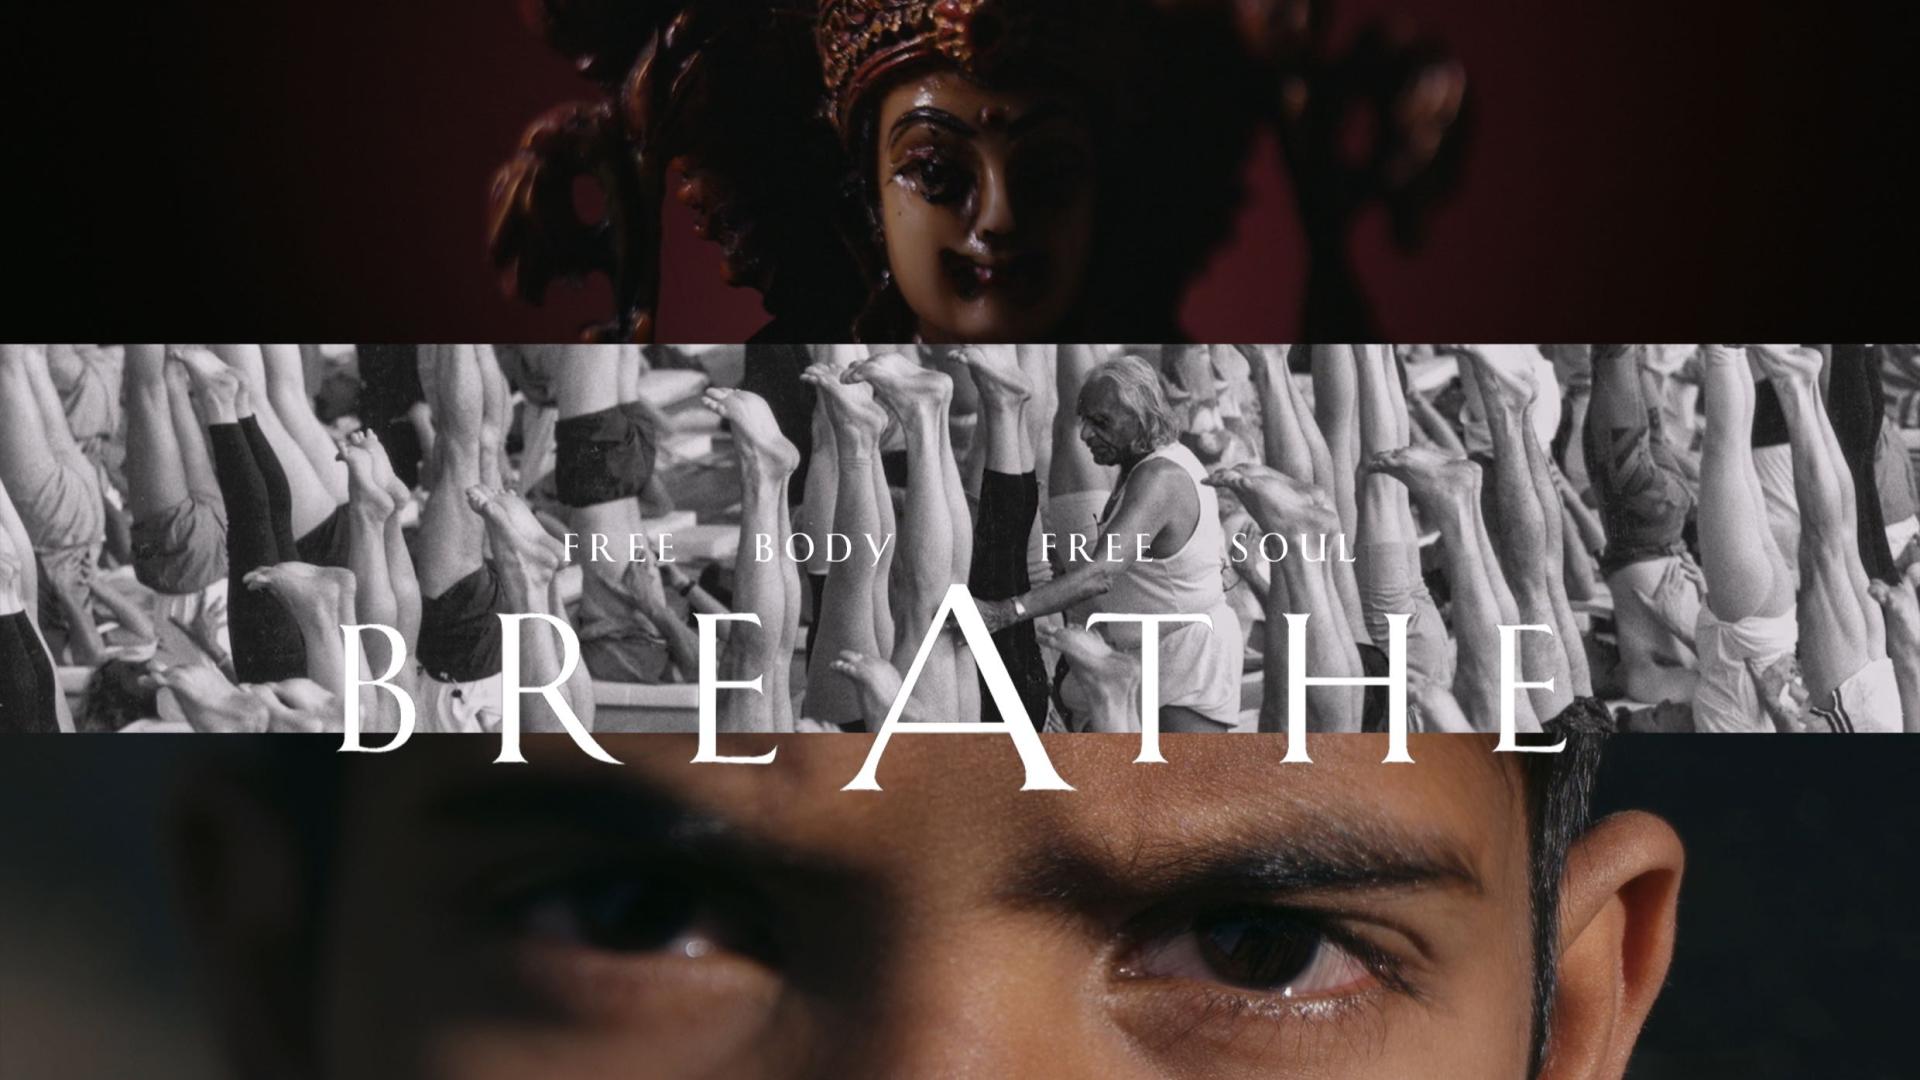 印度艾扬格瑜伽大师人物纪录片《Breathe》宣传片